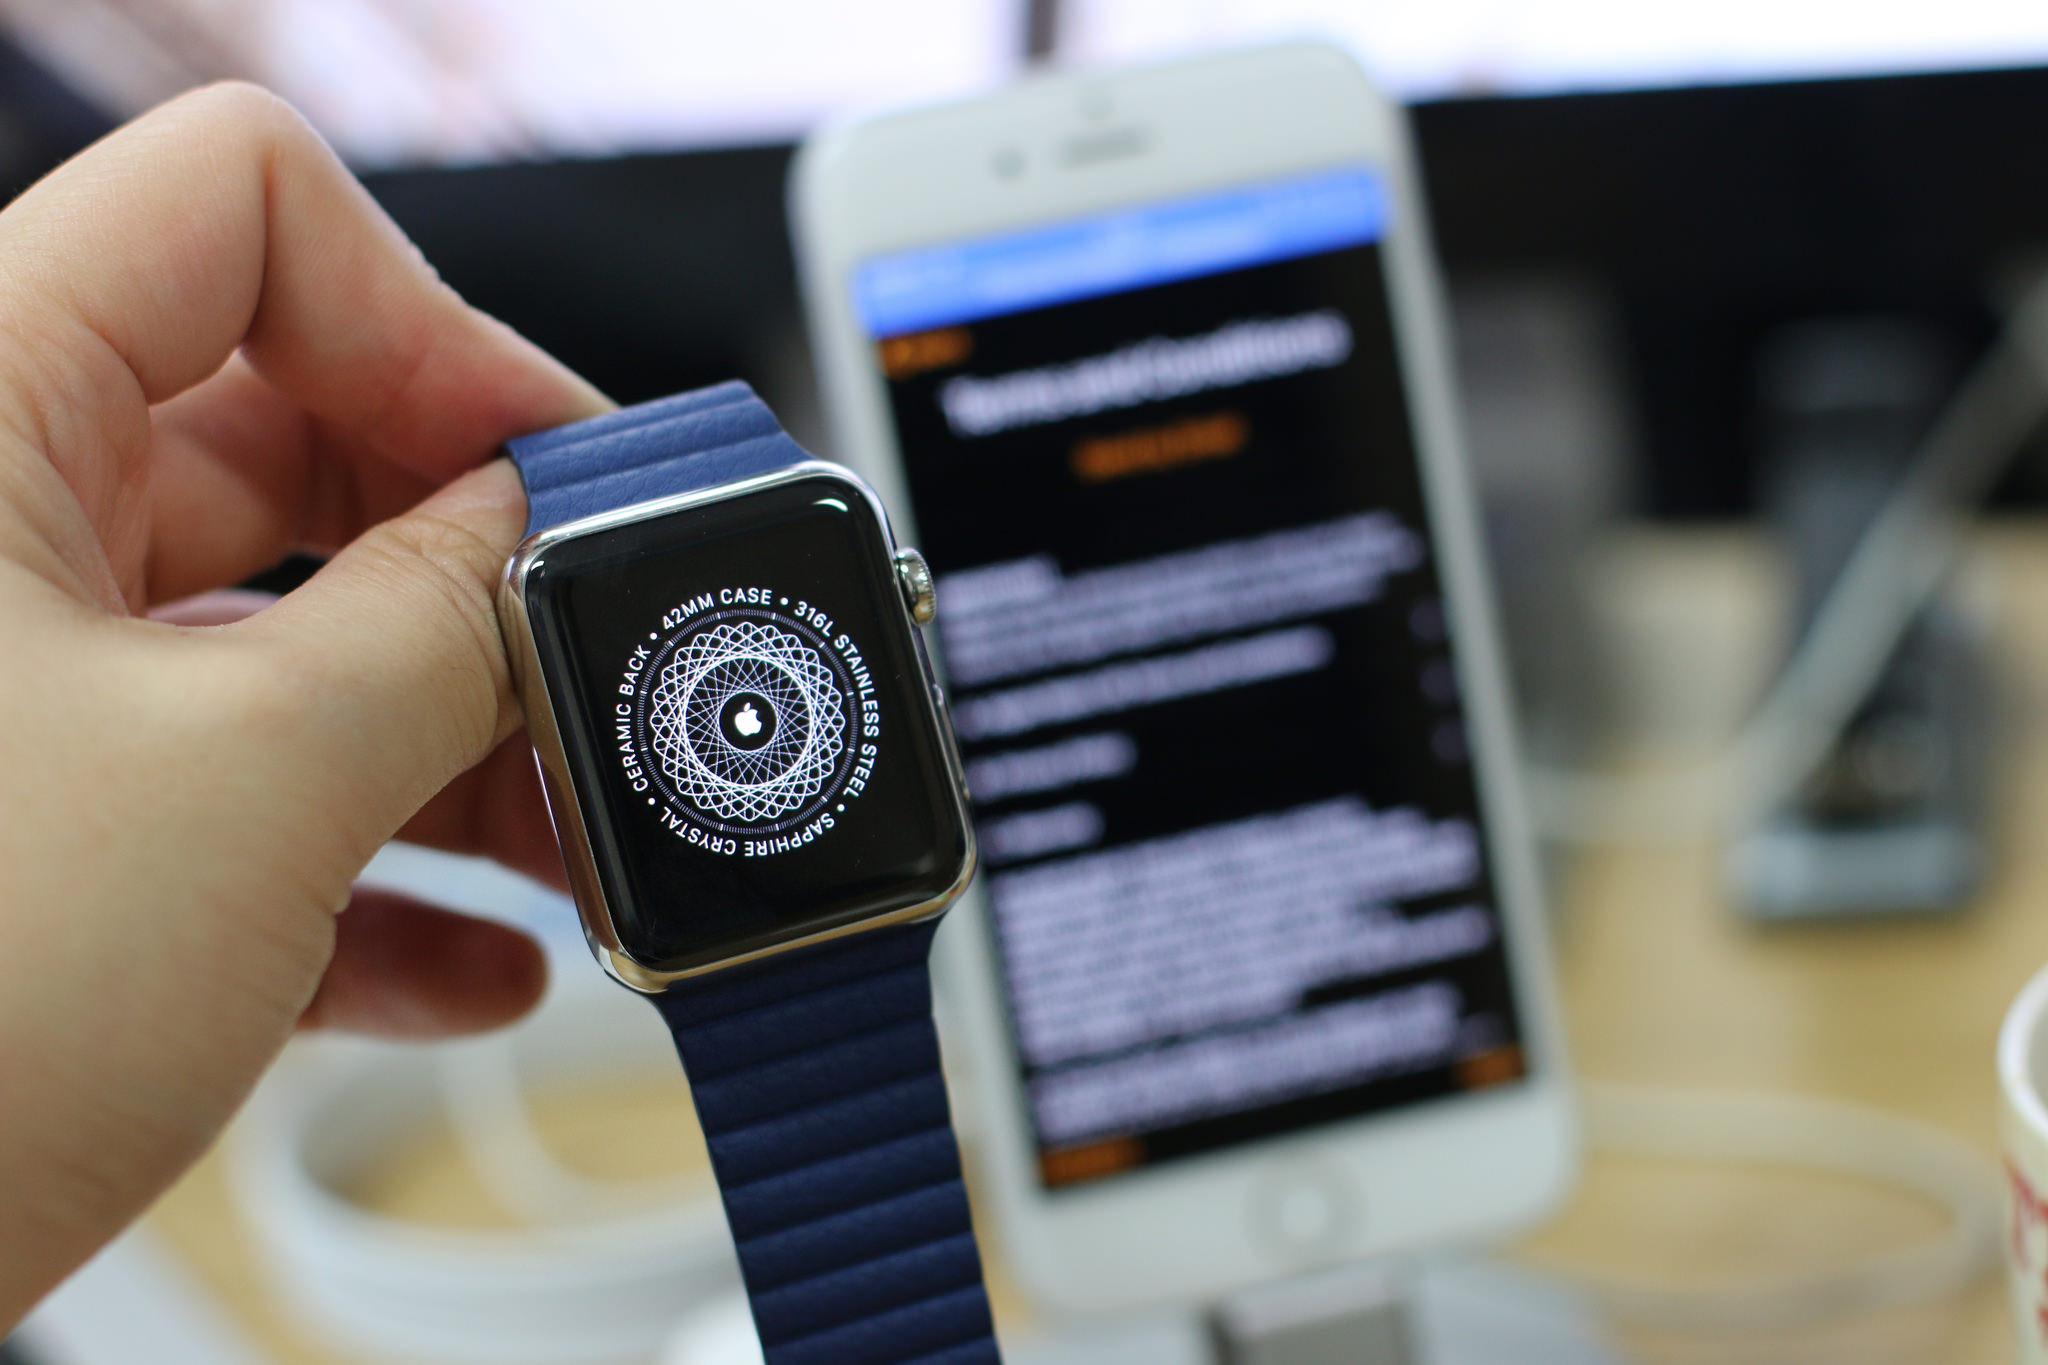 Обновление часов apple. Обновление Эппл вотч. Экран обновления Эппл вотч. Обновление по Apple watch. Обновление эпл вотч часы.